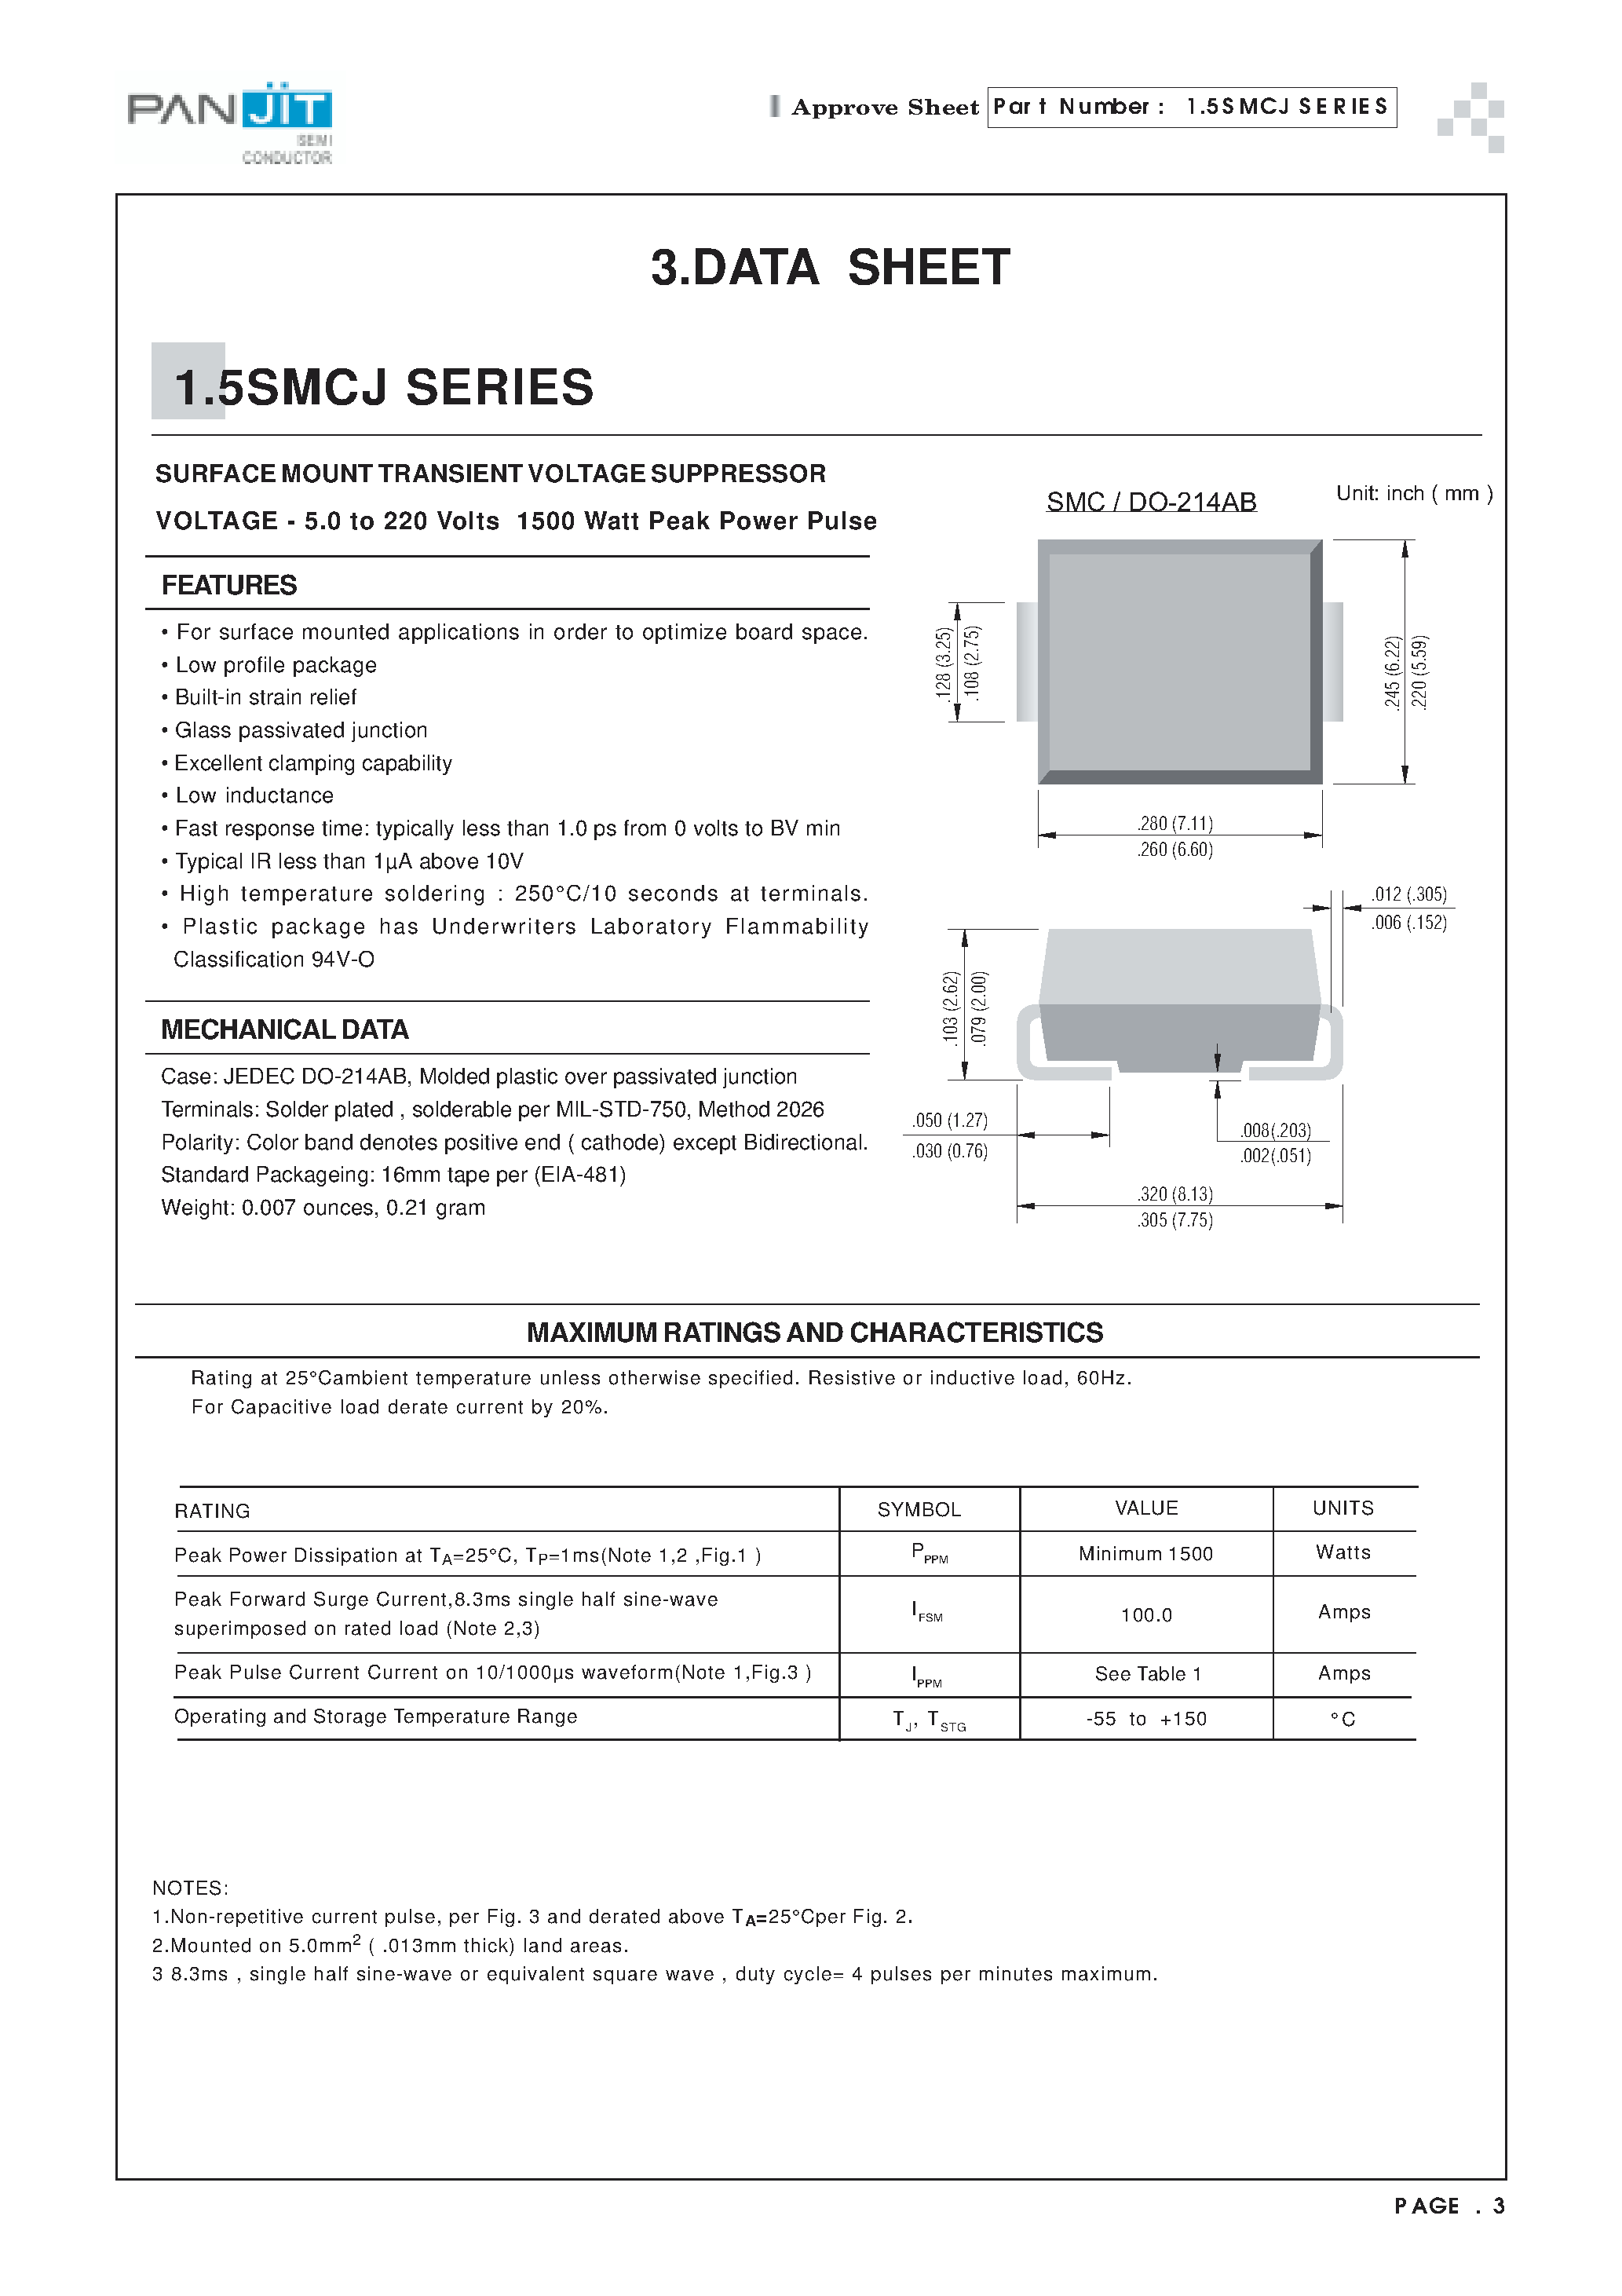 Datasheet 1.5SMCJ8.5 - SURFACE MOUNT TRANSIENT (VOLTAGE SUPPRESSOR VOLTAGE - 5.0 to 220 Volts 1500 Watt Peak Power Pulse) page 1